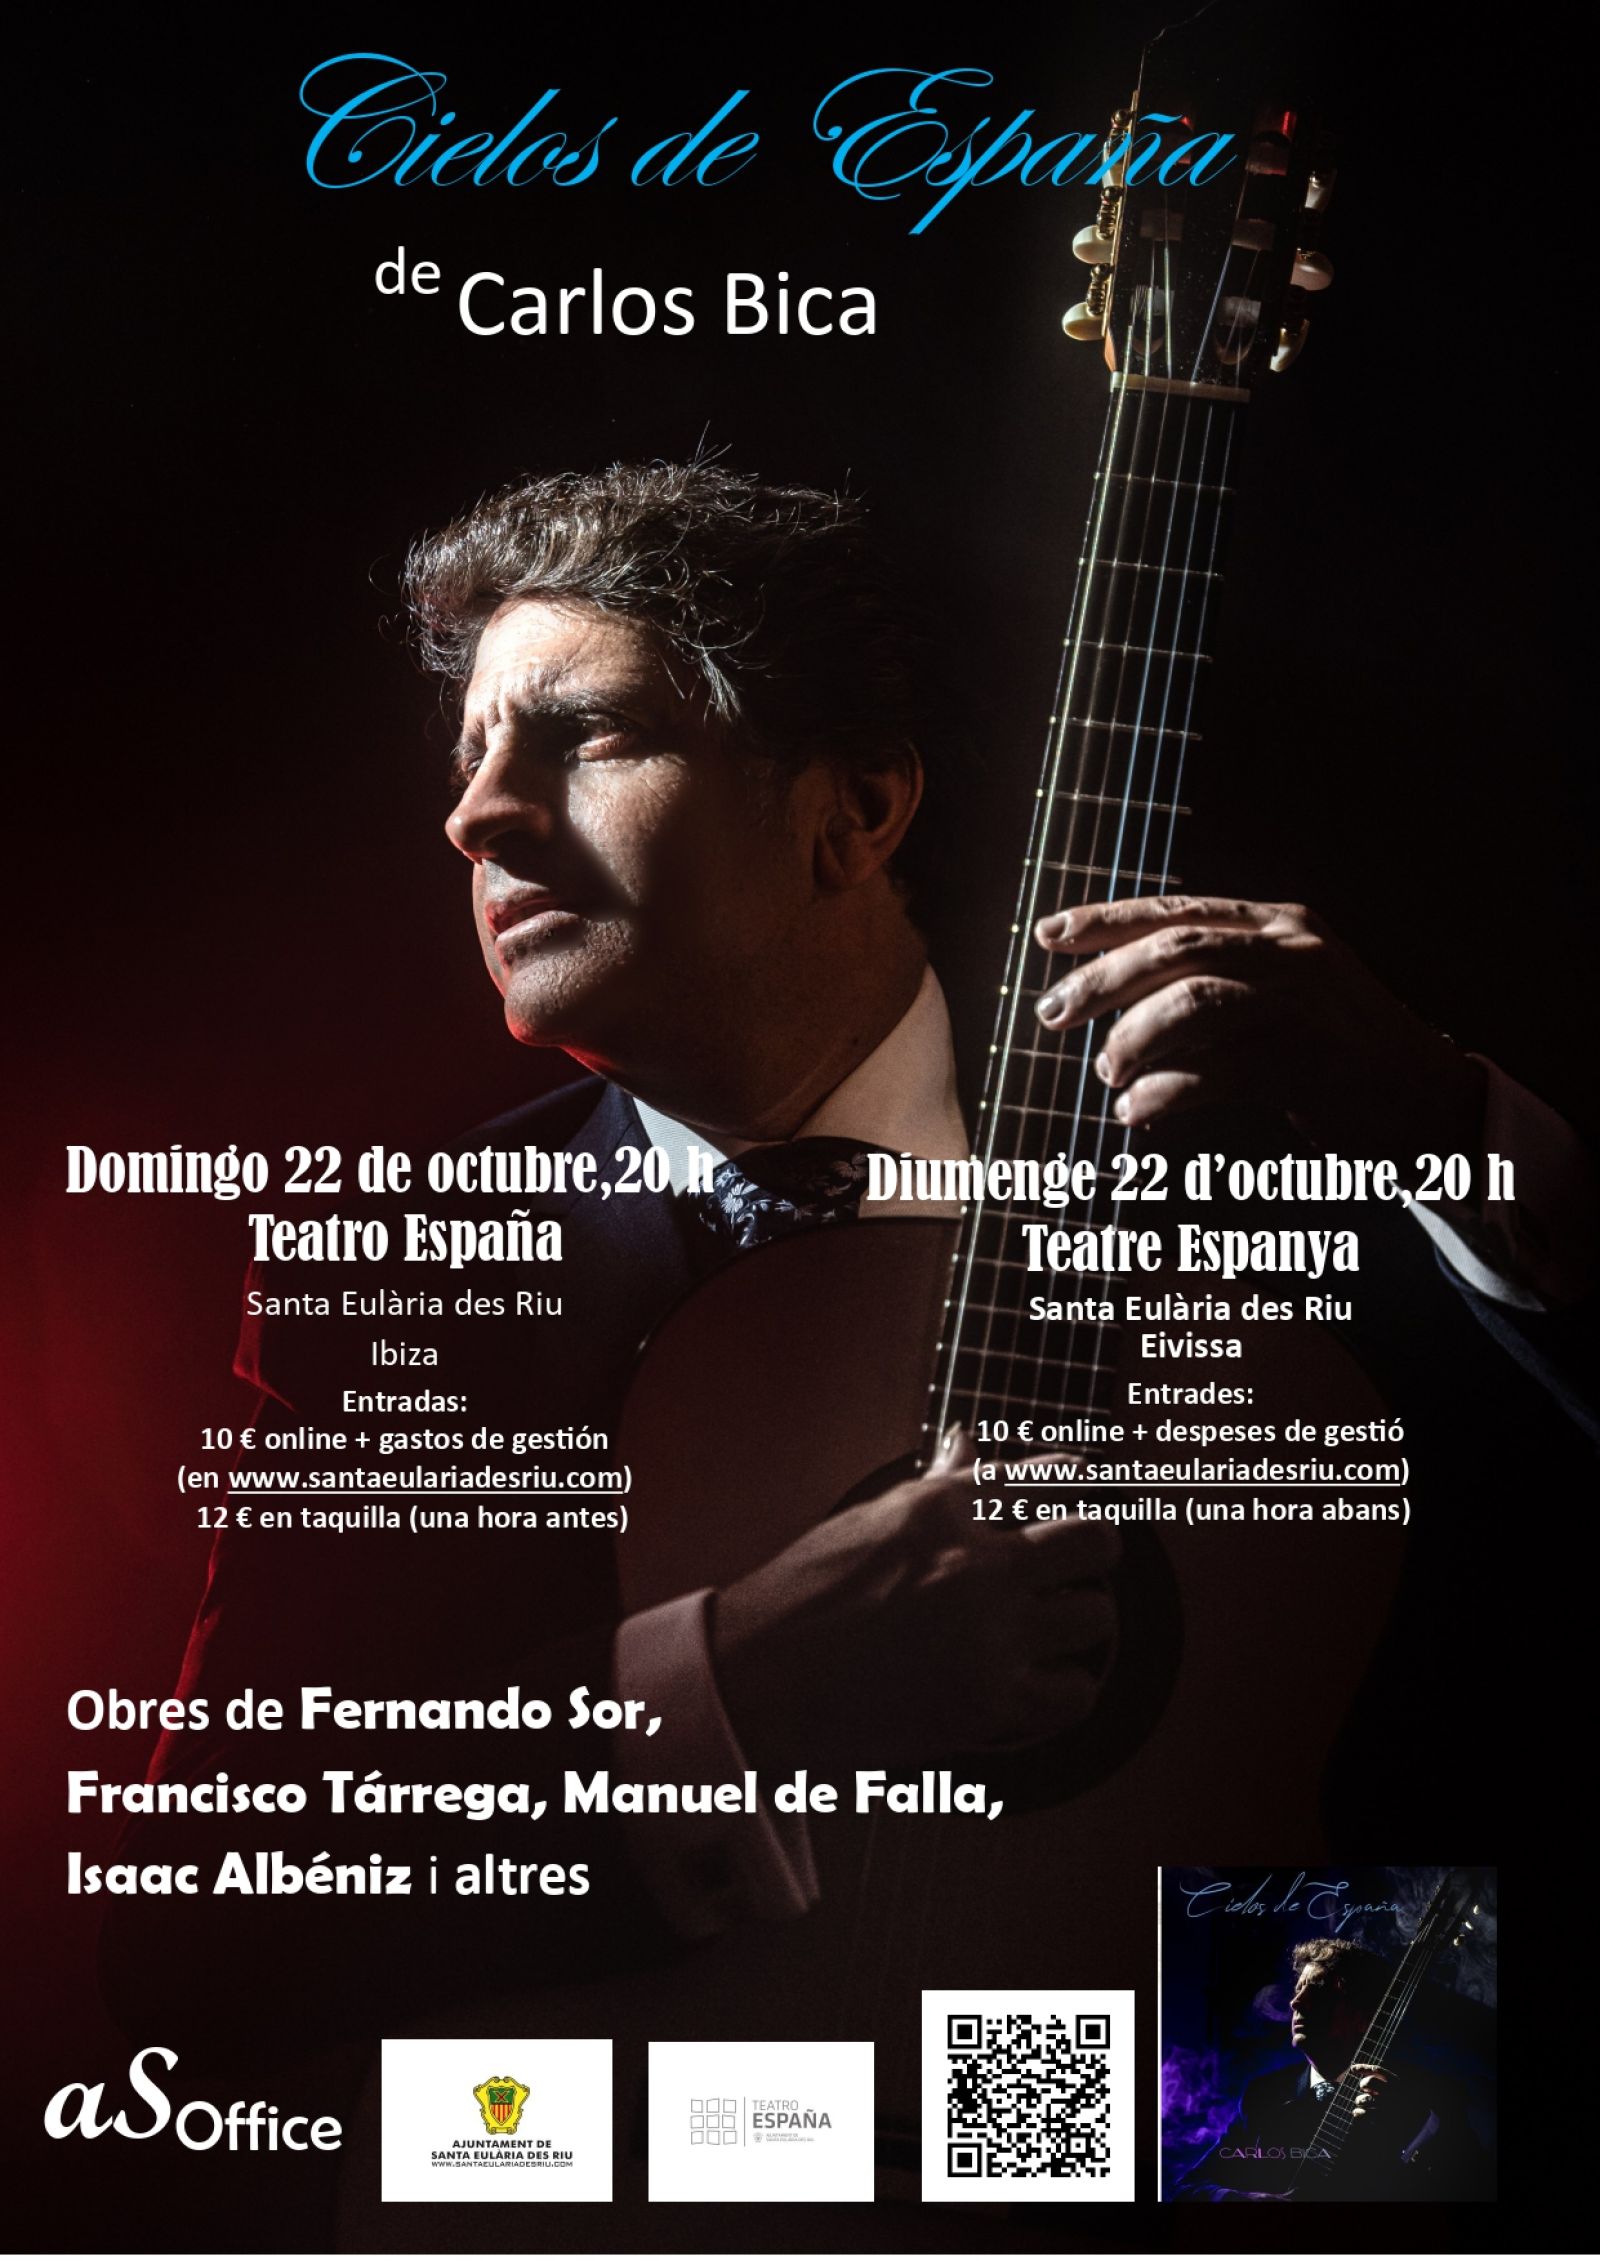 El guitarrista clásico Carlos Bica presenta en el Teatro España su homenaje a la ‘sonoridad española’ con ‘Cielos de España